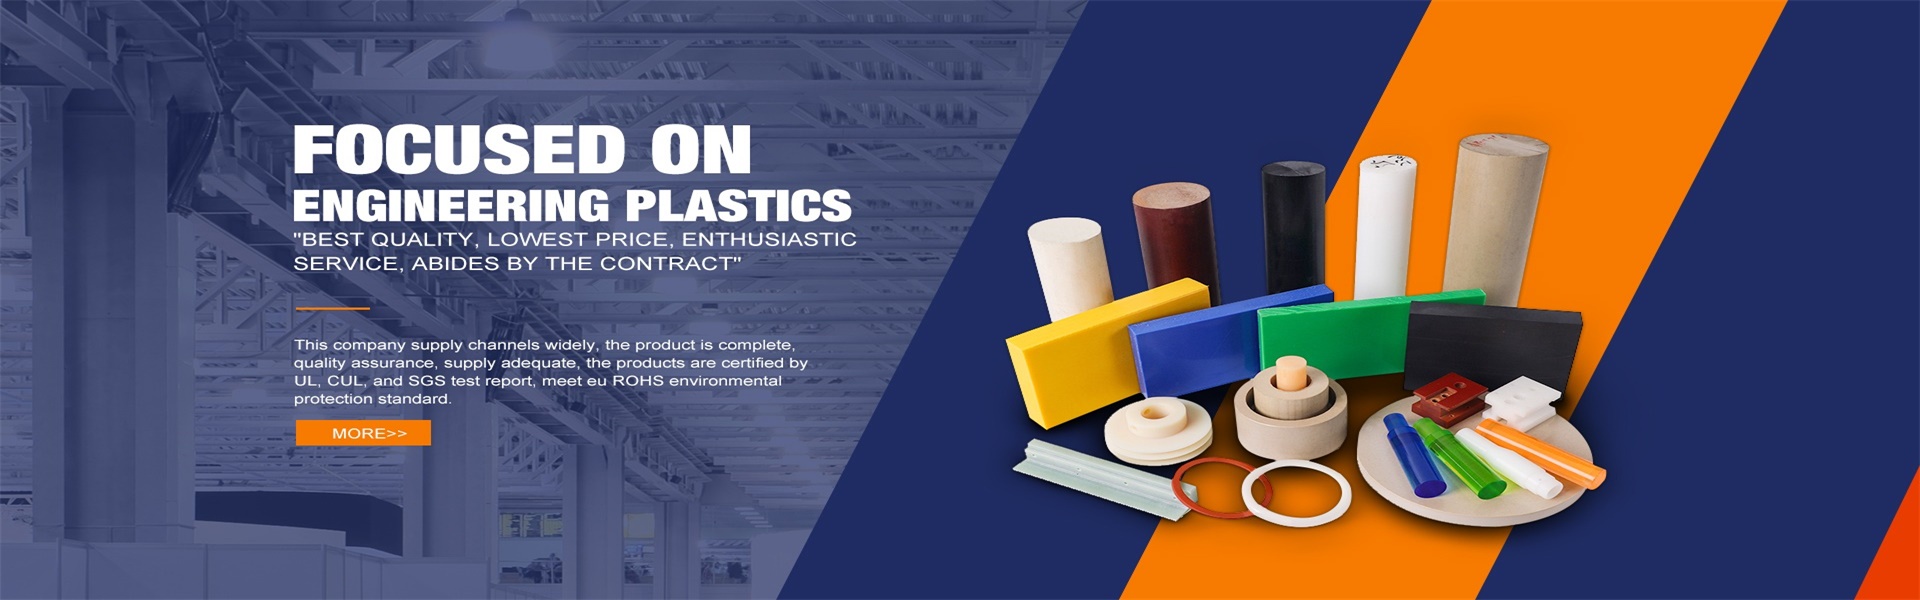 بولي كلوريد الفينيل لوحة ، لوحة الاكريليك ، وتقاسم المنافع لوحة,Dongguan Zhimian Plastic Materials Co., Ltd.